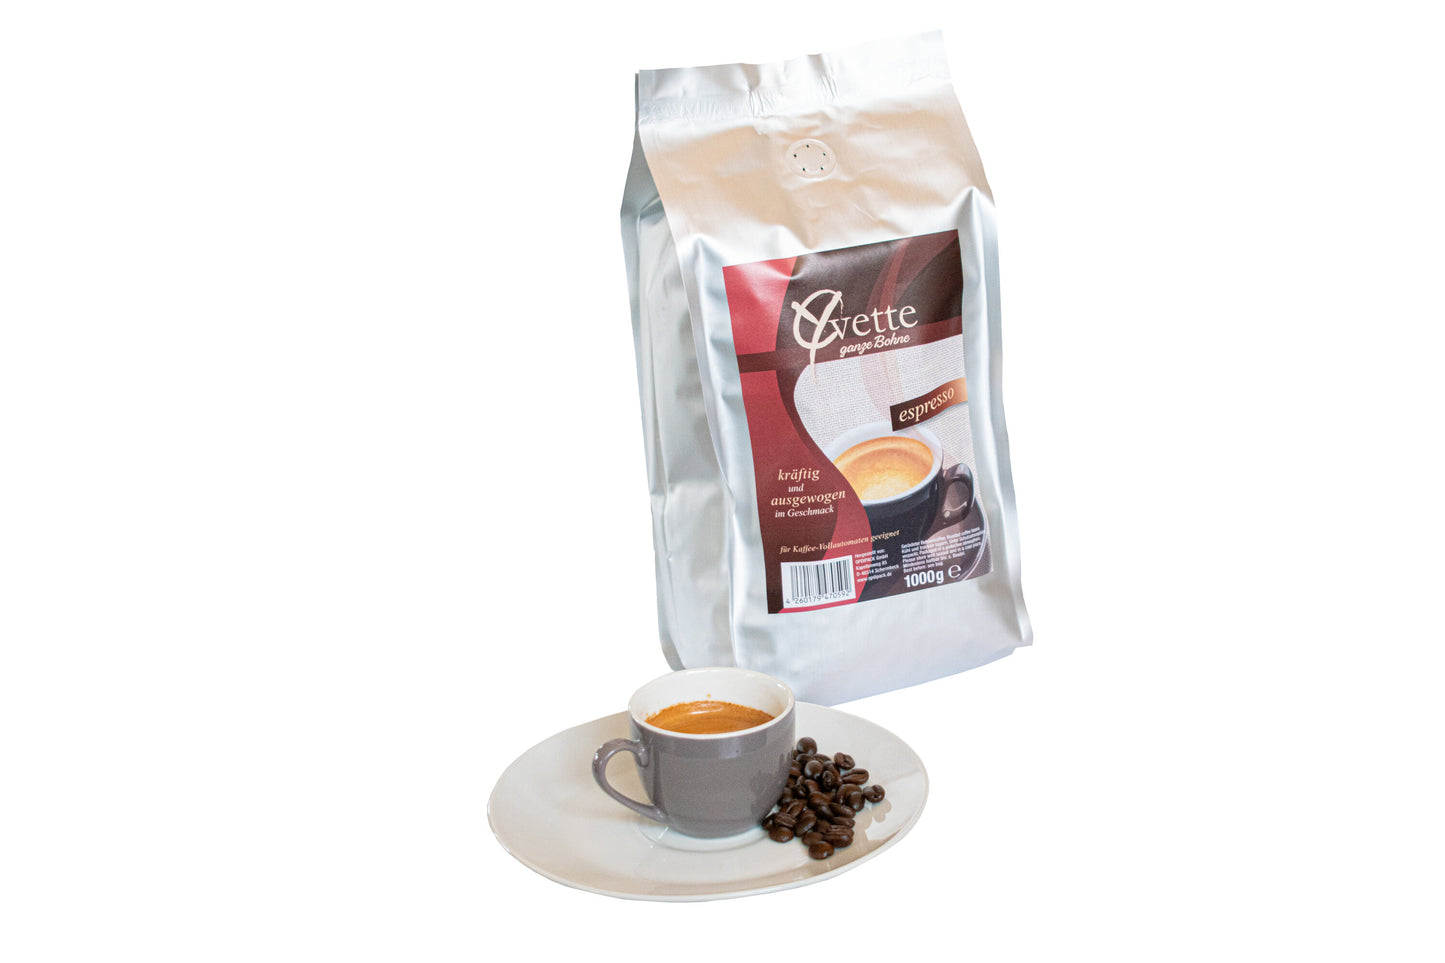 Ein silberner Beutel mit 1000g frisch gerösteten Espresso-Kaffeebohnen der Marke Yvette Kaffee. Der Beutel zeigt das Logo der Marke und die Produktbezeichnung. Vor dem Beutel ist ein Teller mit Kaffeebohnen und auf dem Teller espresso Tasse, die ein Gefühl von Frische und Qualität vermitteln.